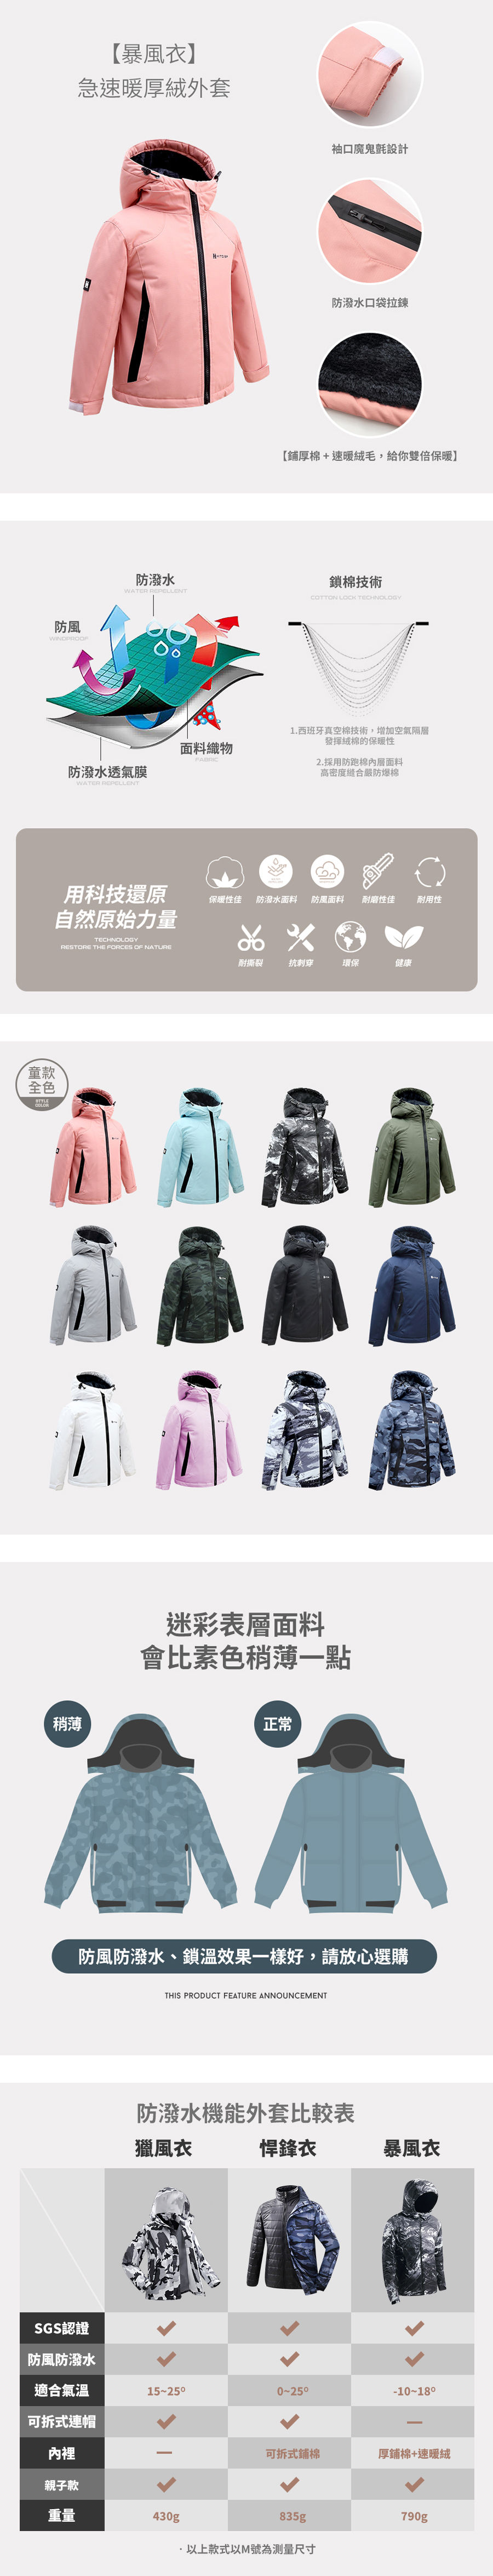 【暴風衣．童款】急速暖厚絨外套．極地禦寒業界第一．SGS多重認證